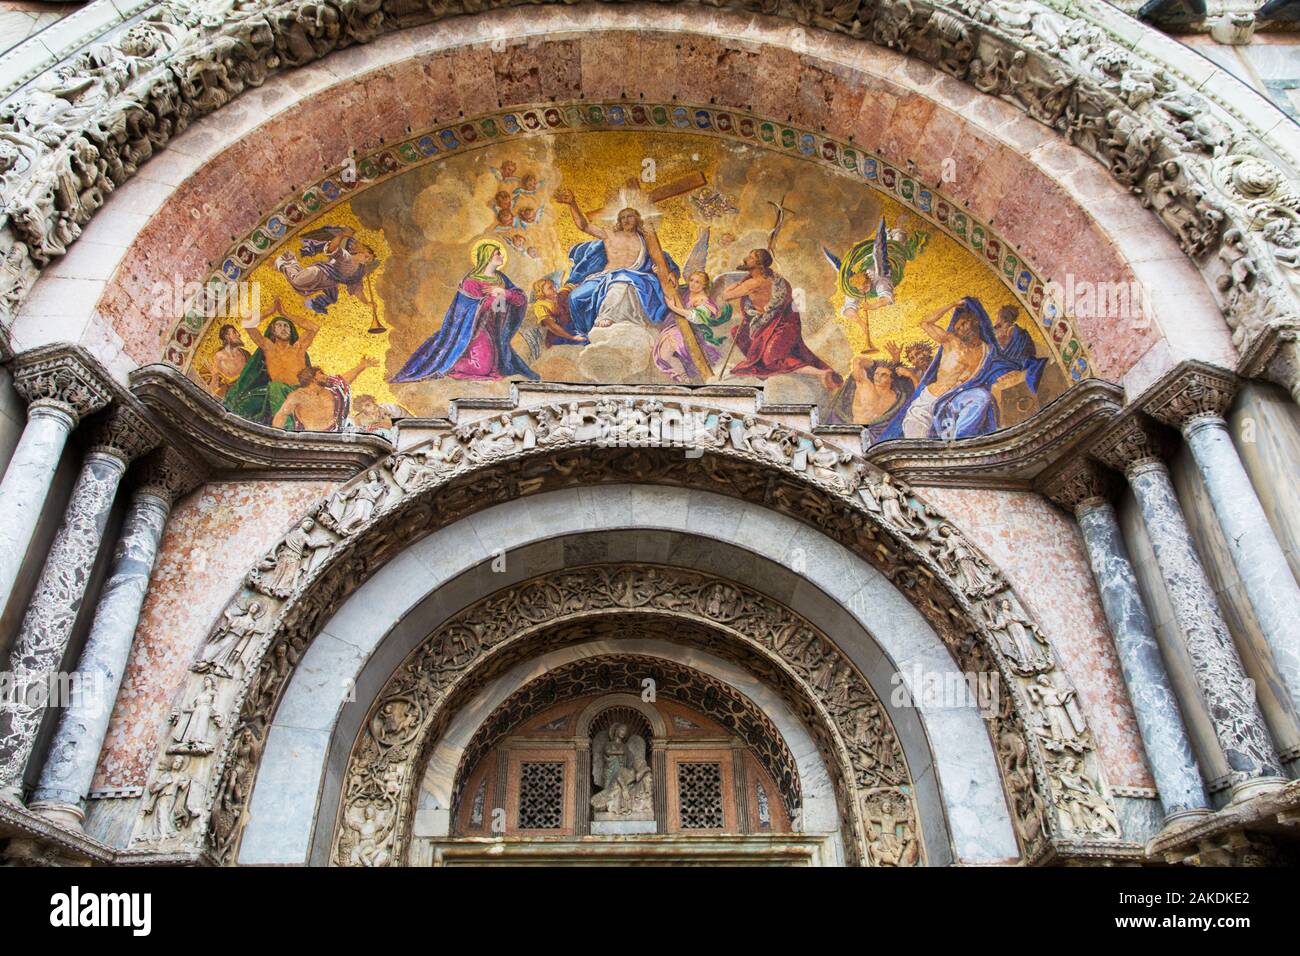 La façade de la Basilique St Marc avec le Jugement Dernier à Venise Italie Banque D'Images